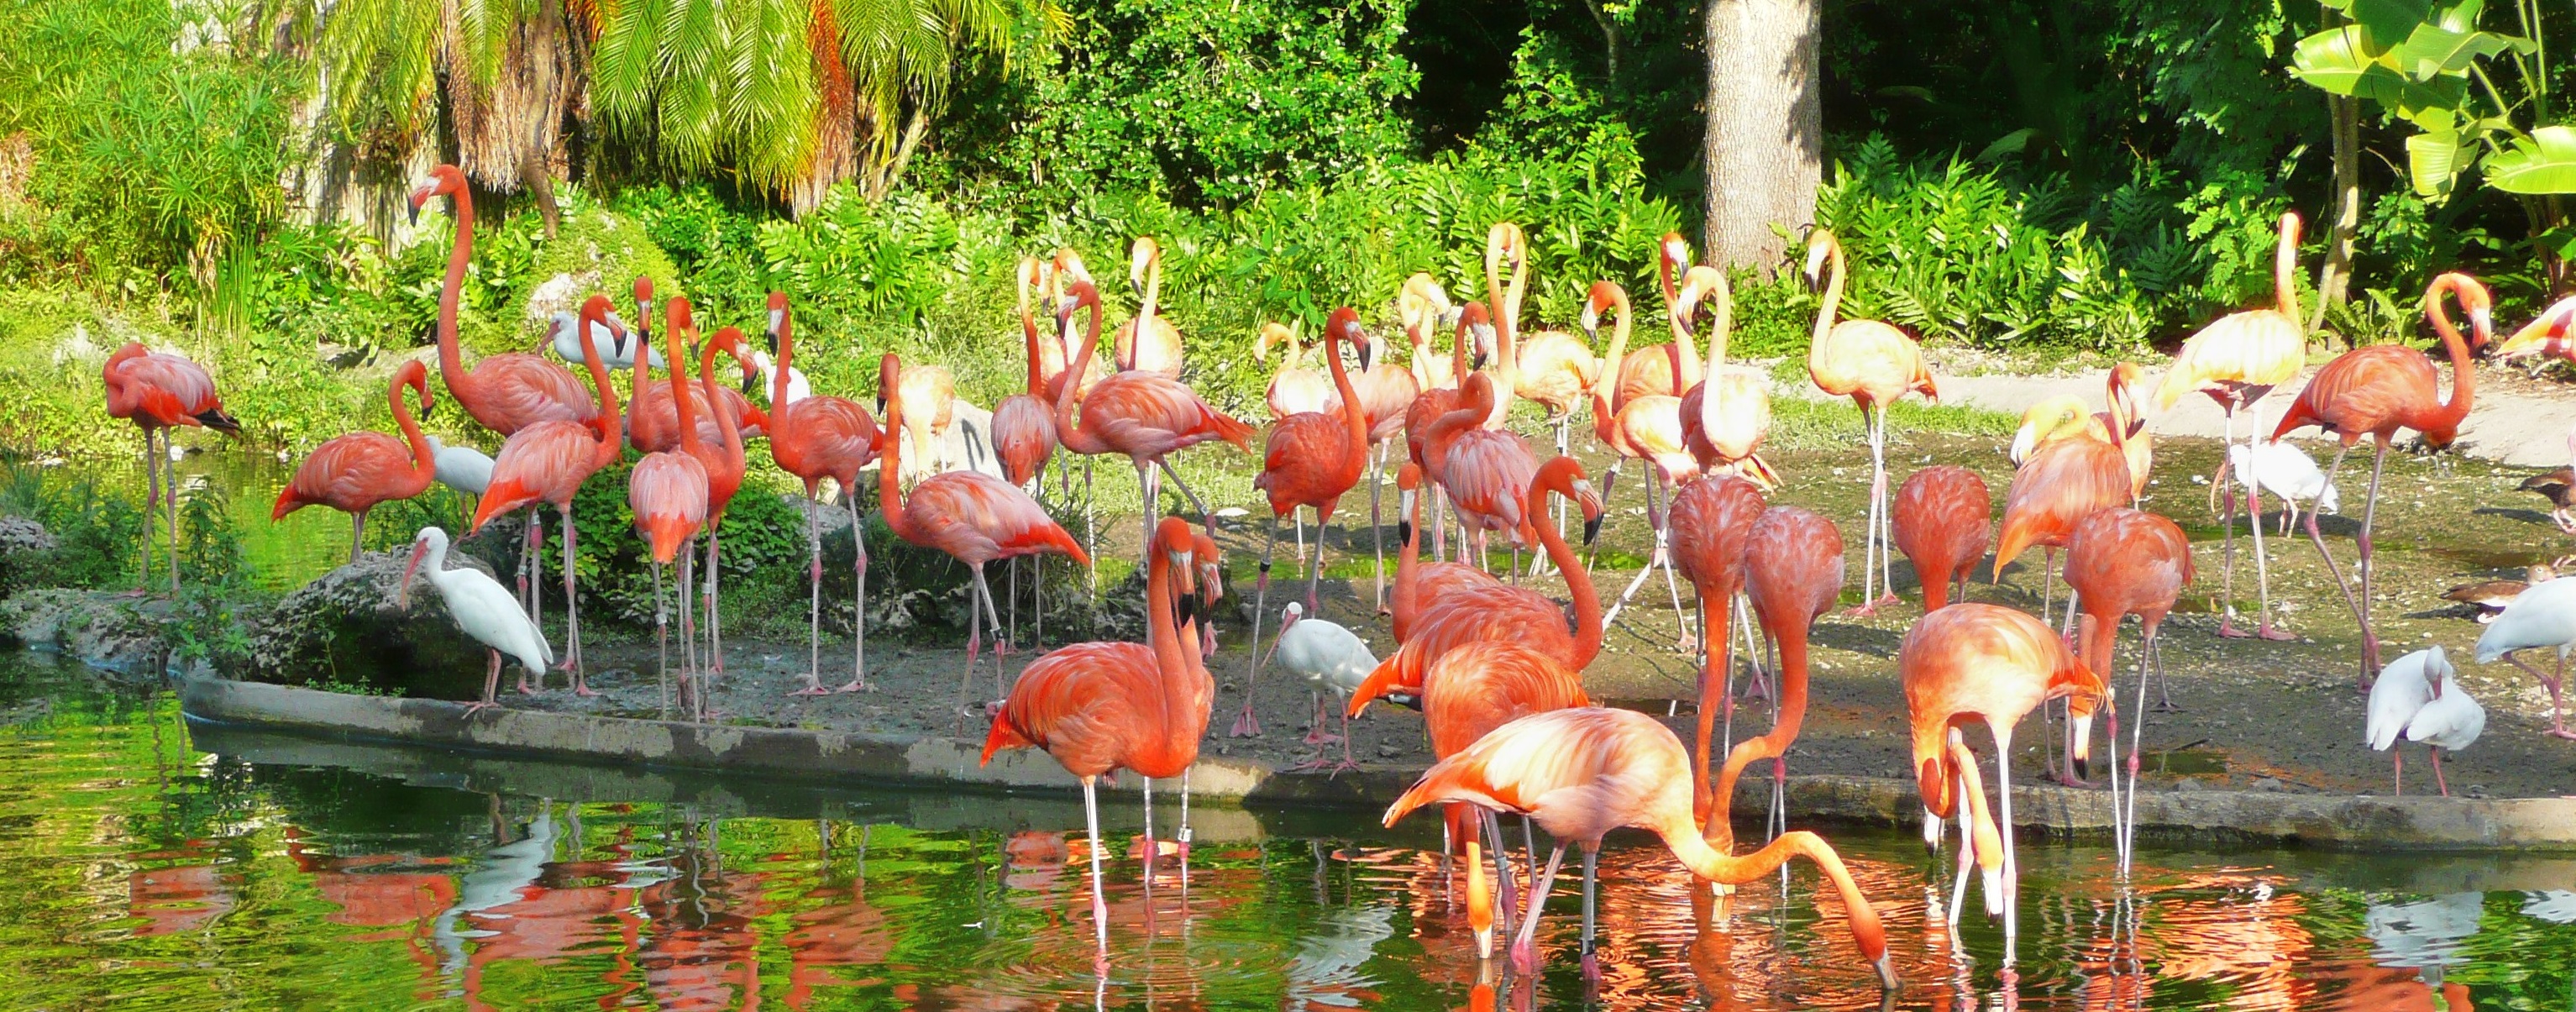 Zoo Miami